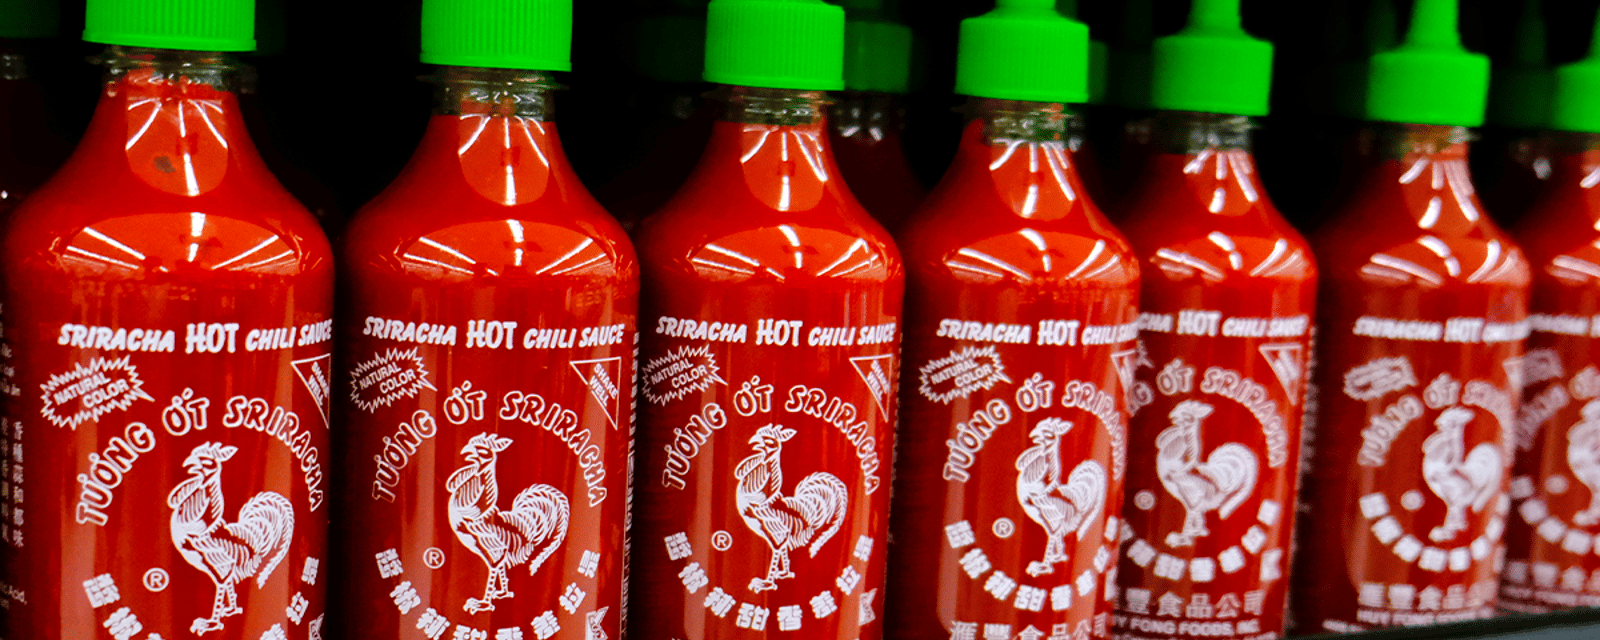 Une nouvelle pénurie de sauce Sriracha semble inévitable